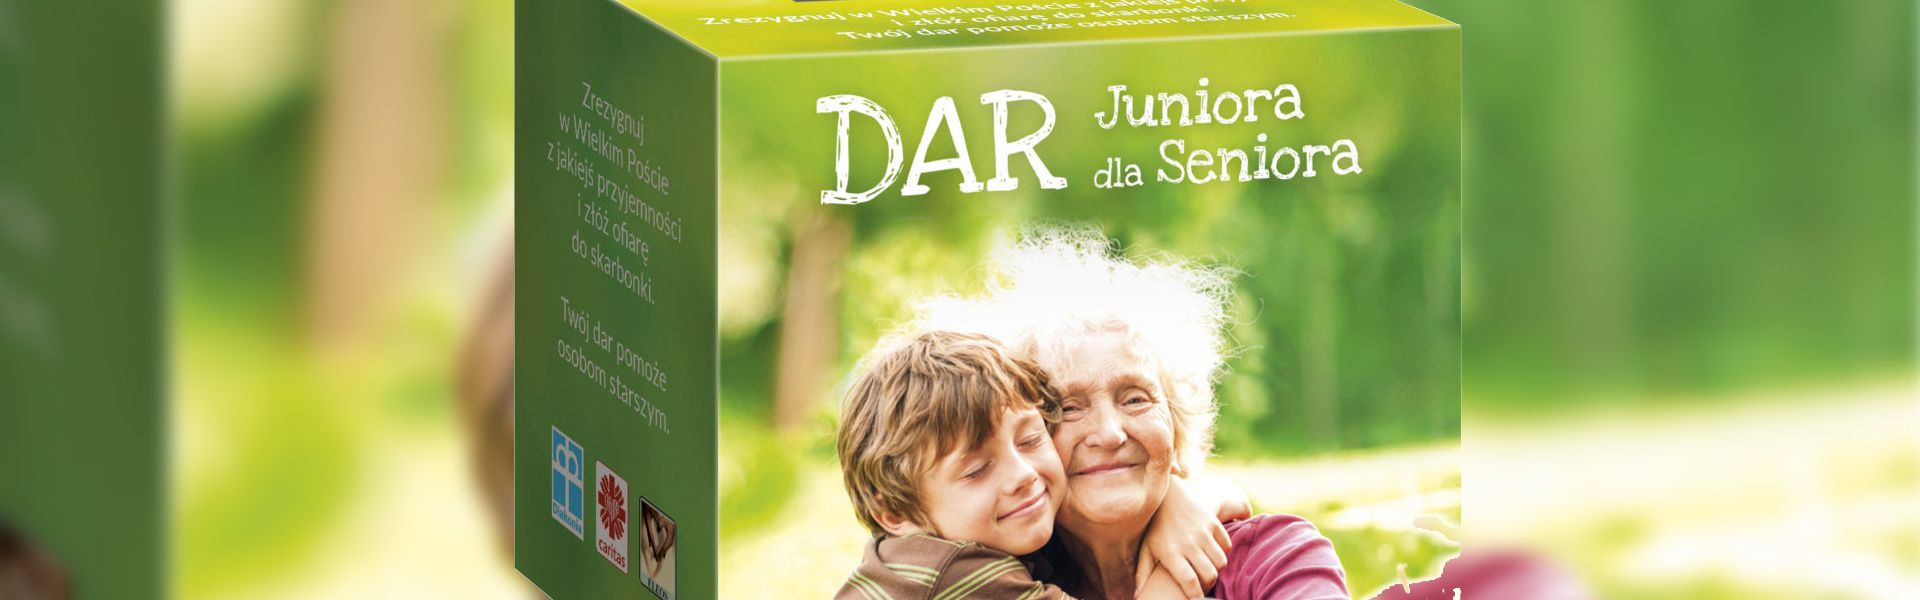 Ogłoszenie Parafialnego Zespołu Caritas w sprawie skarbonki "Dar juniora dla seniora"